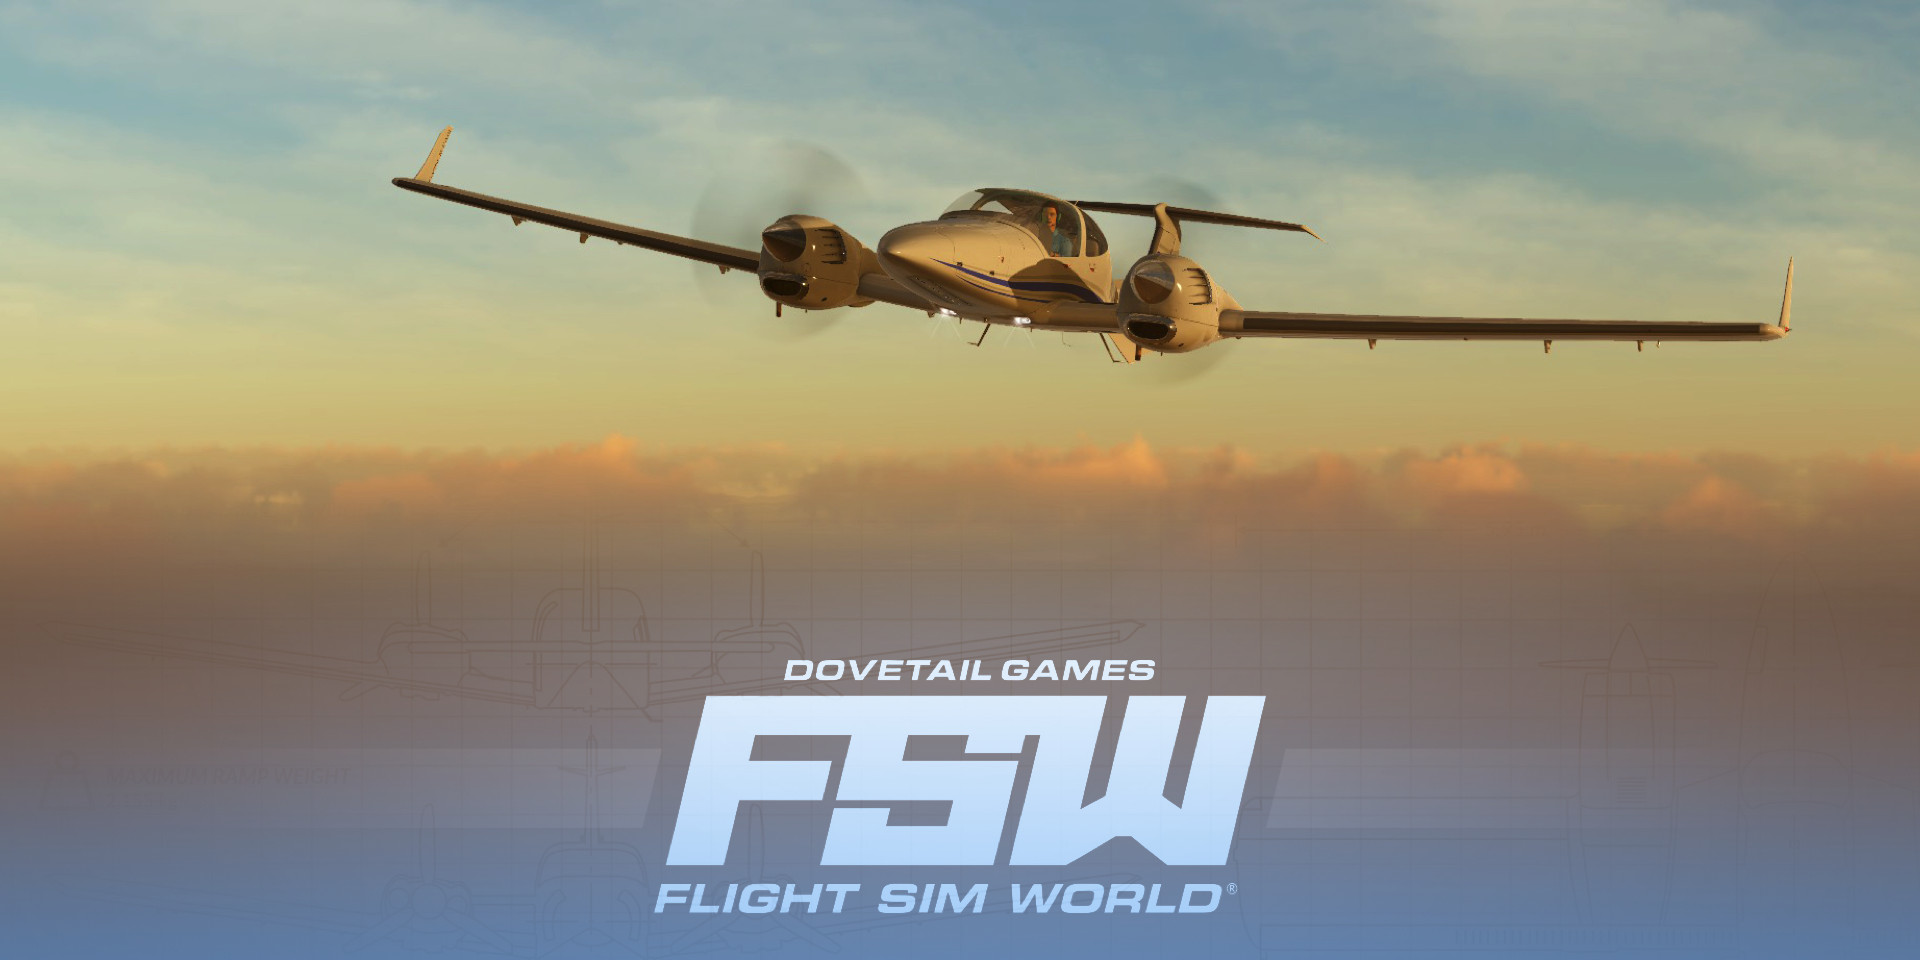 Flight Sim World von Dovetail Games wird eingestellt